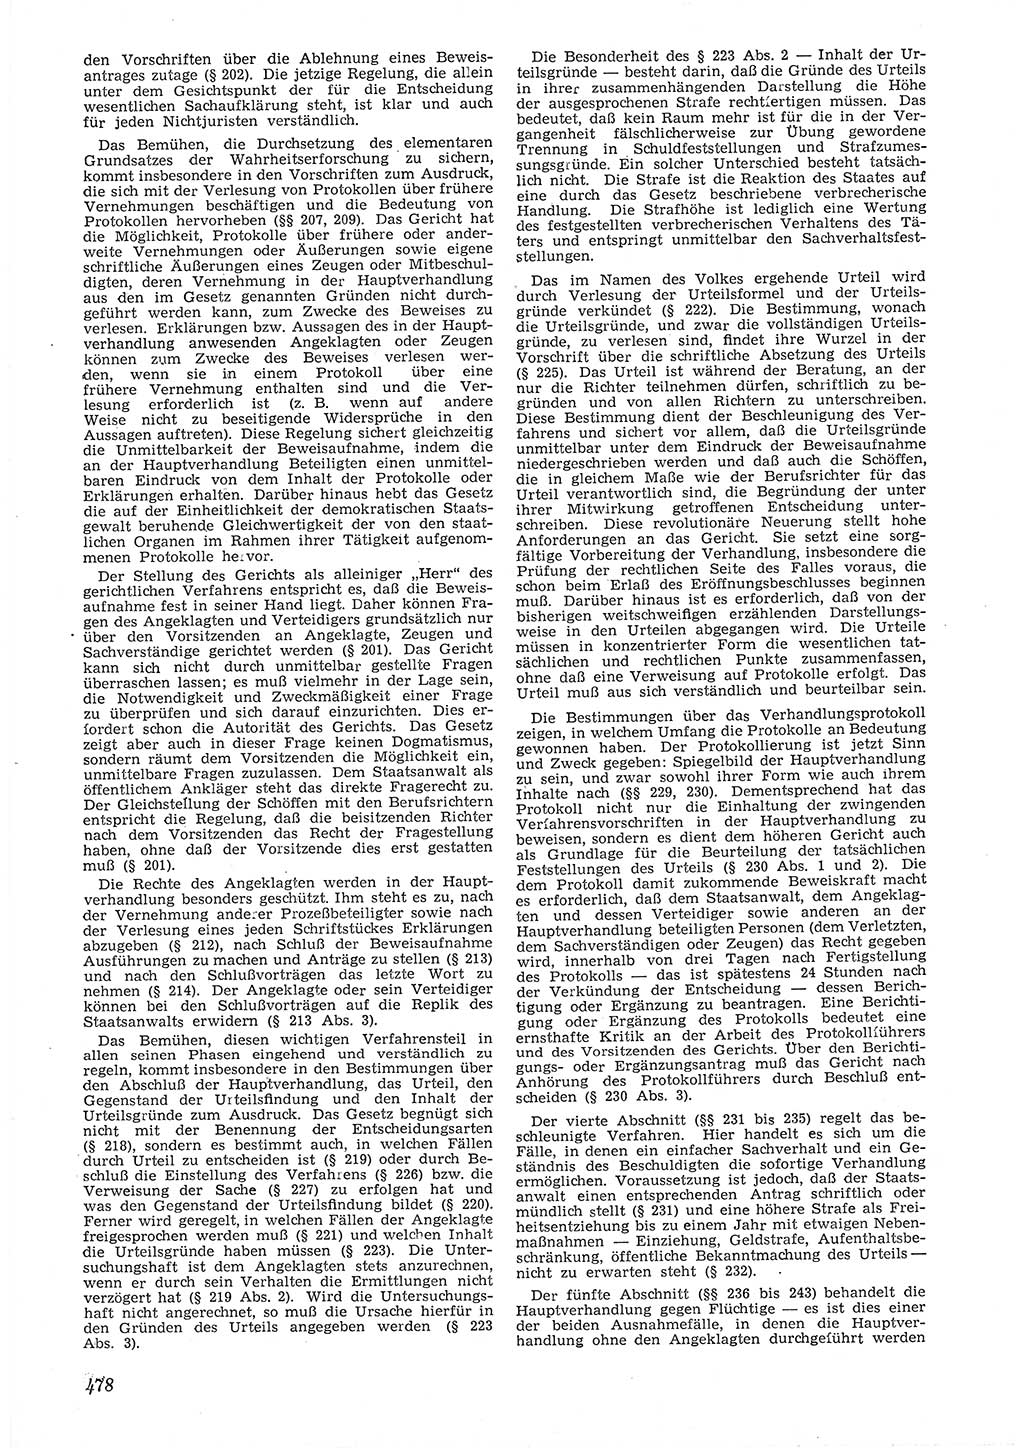 Neue Justiz (NJ), Zeitschrift für Recht und Rechtswissenschaft [Deutsche Demokratische Republik (DDR)], 6. Jahrgang 1952, Seite 478 (NJ DDR 1952, S. 478)